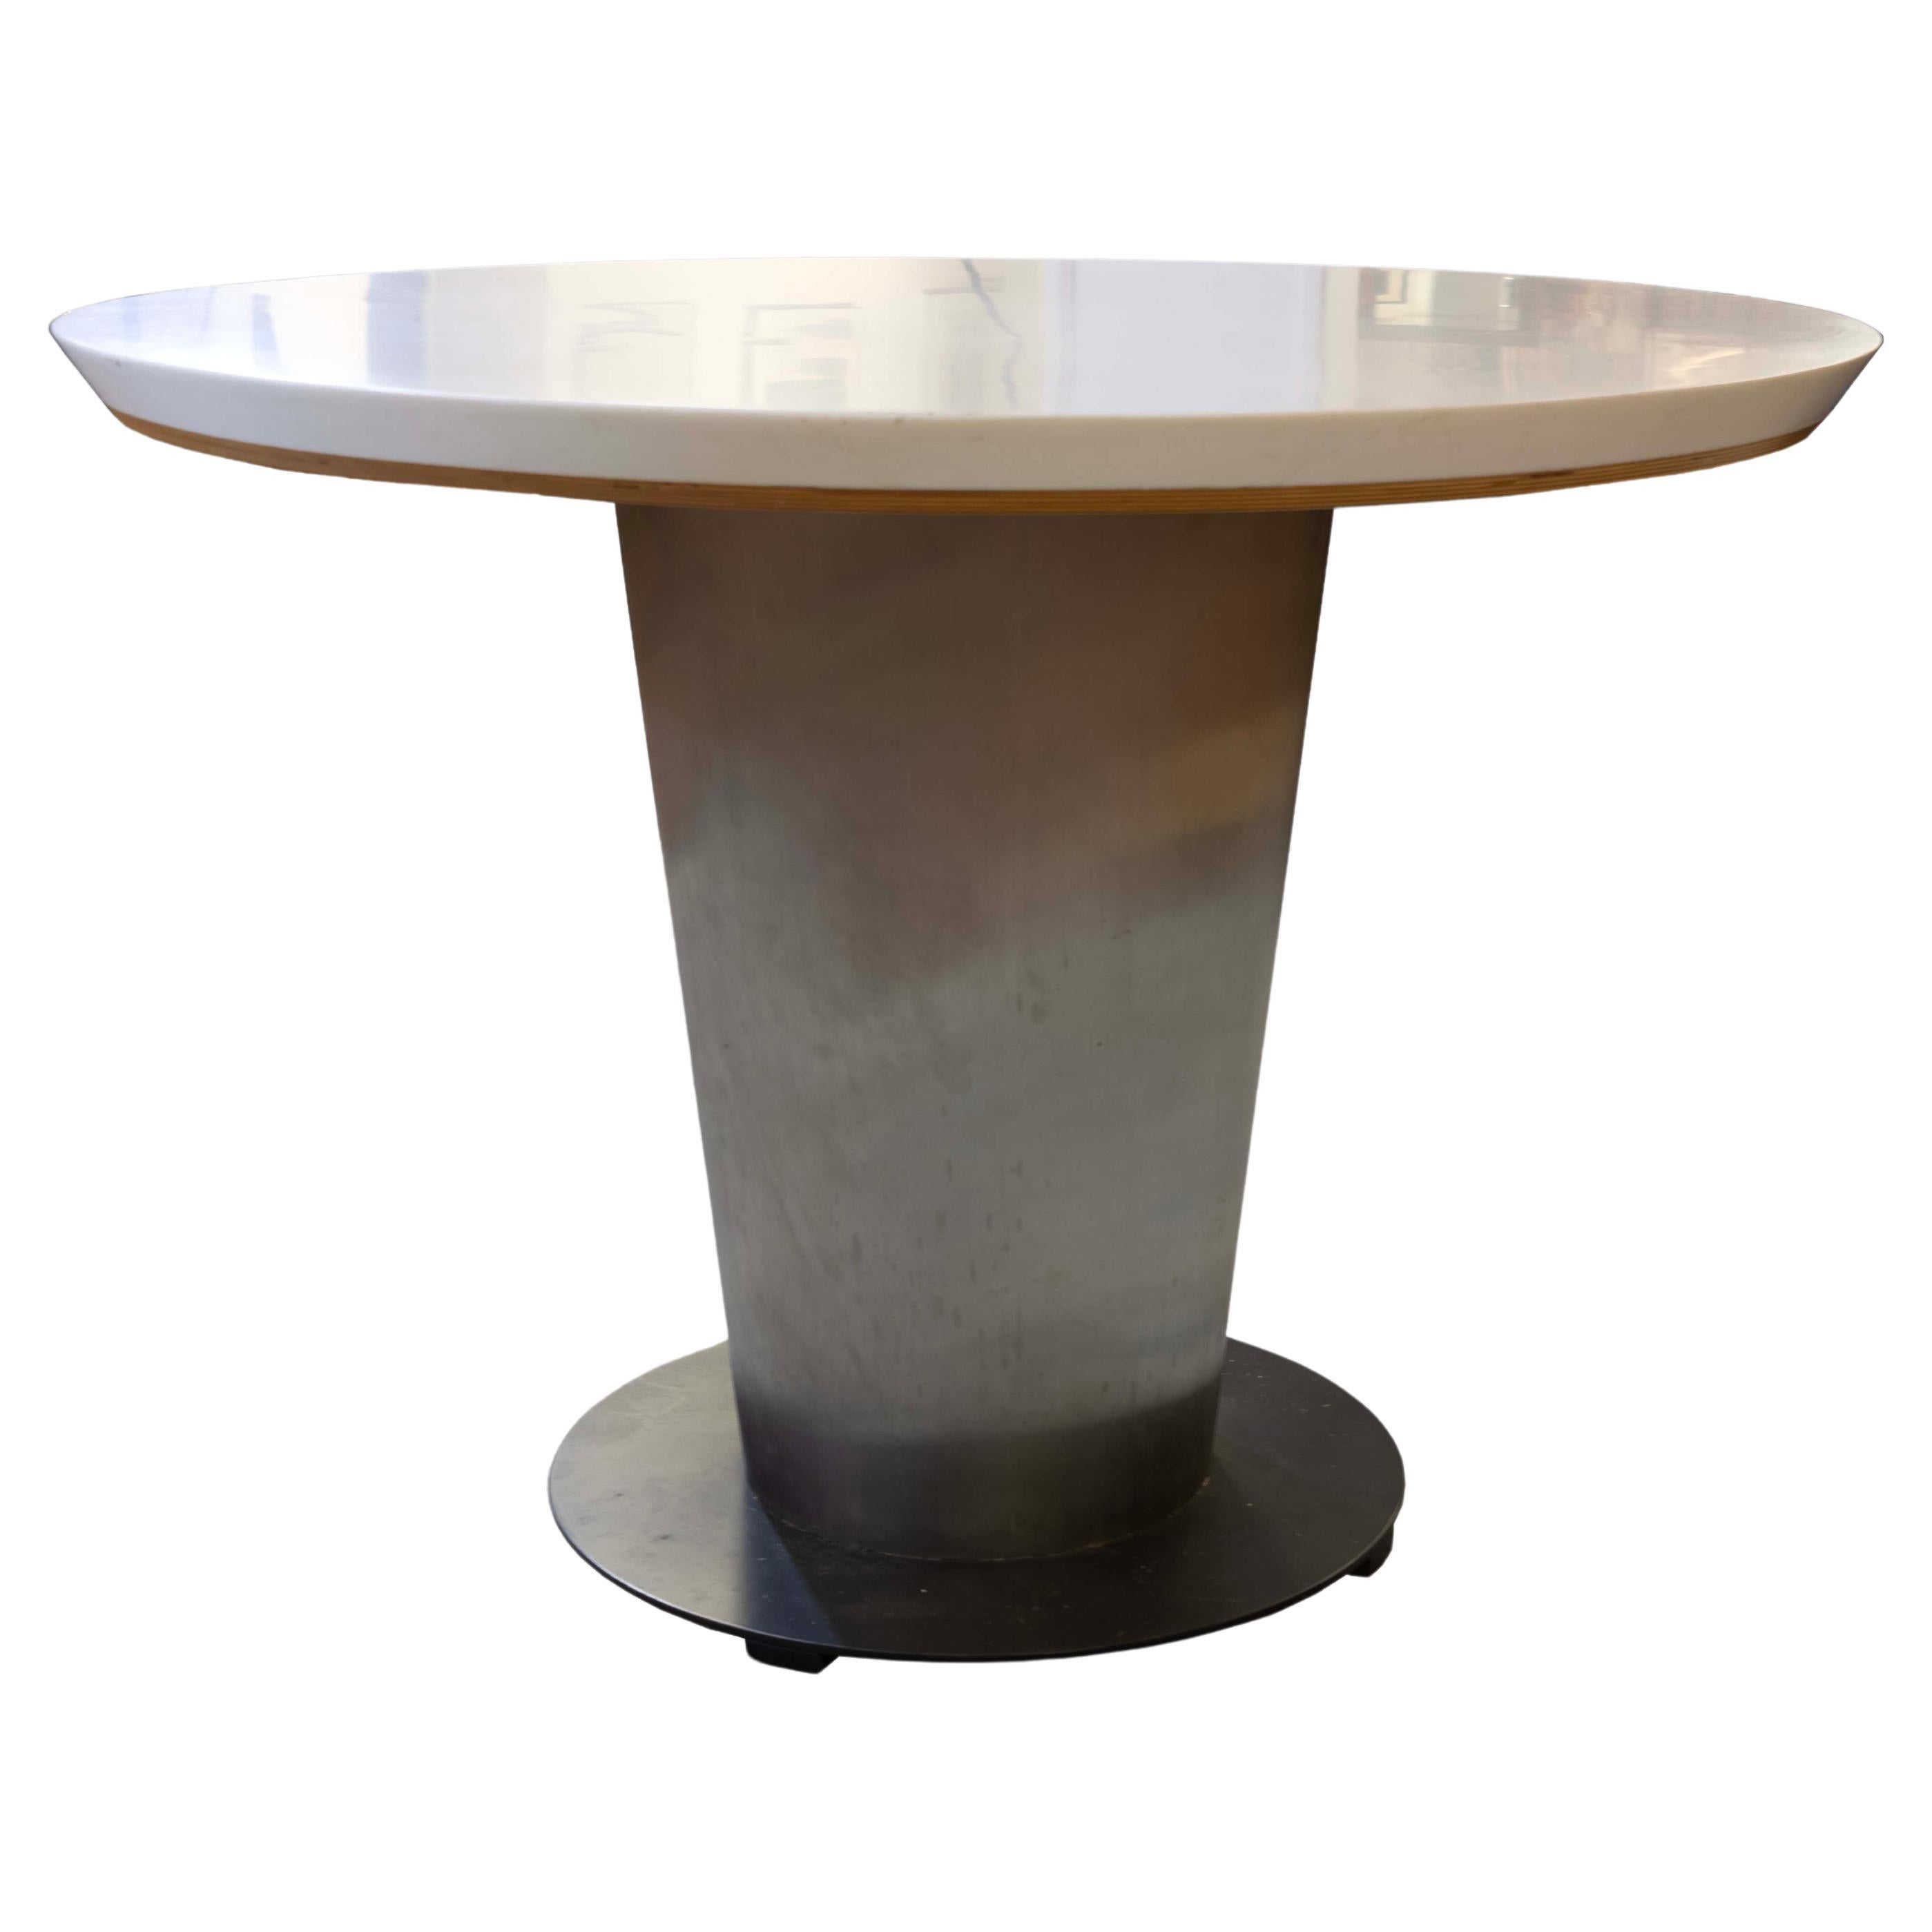 Cette table de dînette moderne et contemporaine est dotée d'un socle métallique robuste et d'un plateau en stratifié rond et épuré. Le design de la table allie fonctionnalité et esthétique minimaliste, soulignée par le contraste entre la finition